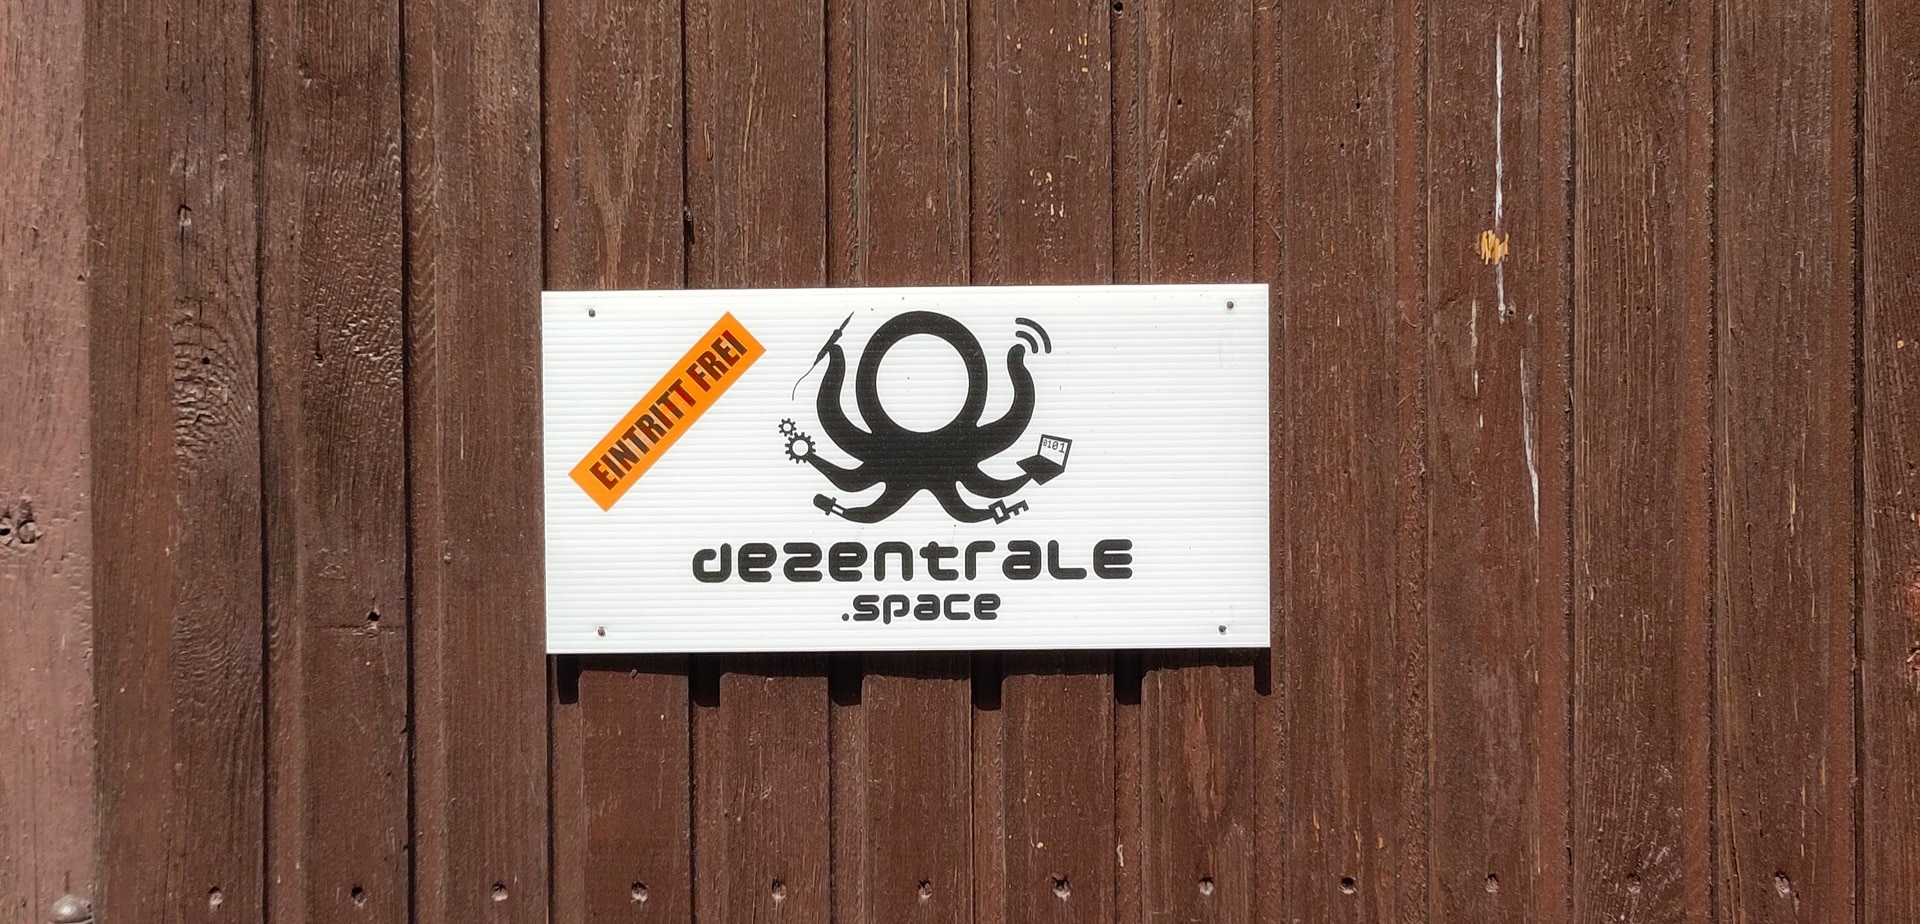 Eine braune Holztür mit angebrachtem Schild "dezentrale.space Eintritt Frei"